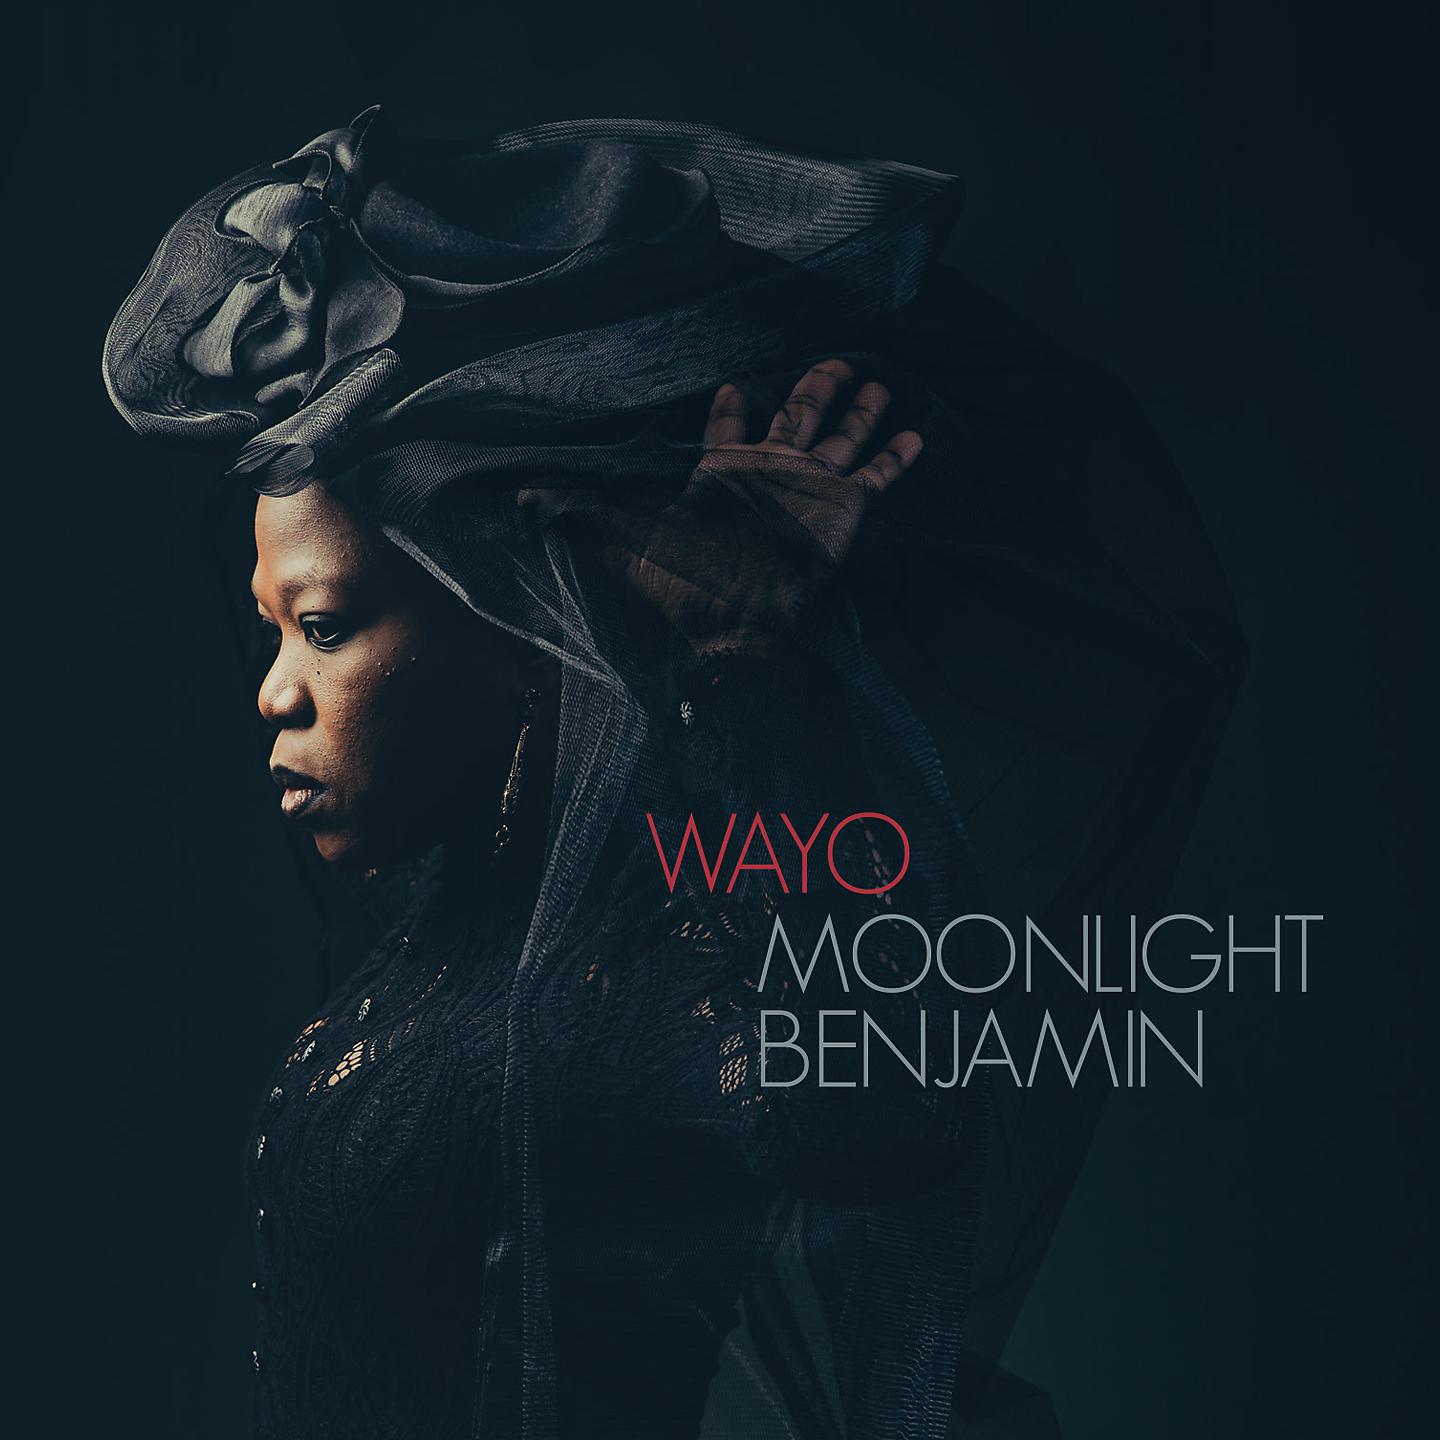 Альбом Wayo исполнителя Moonlight Benjamin